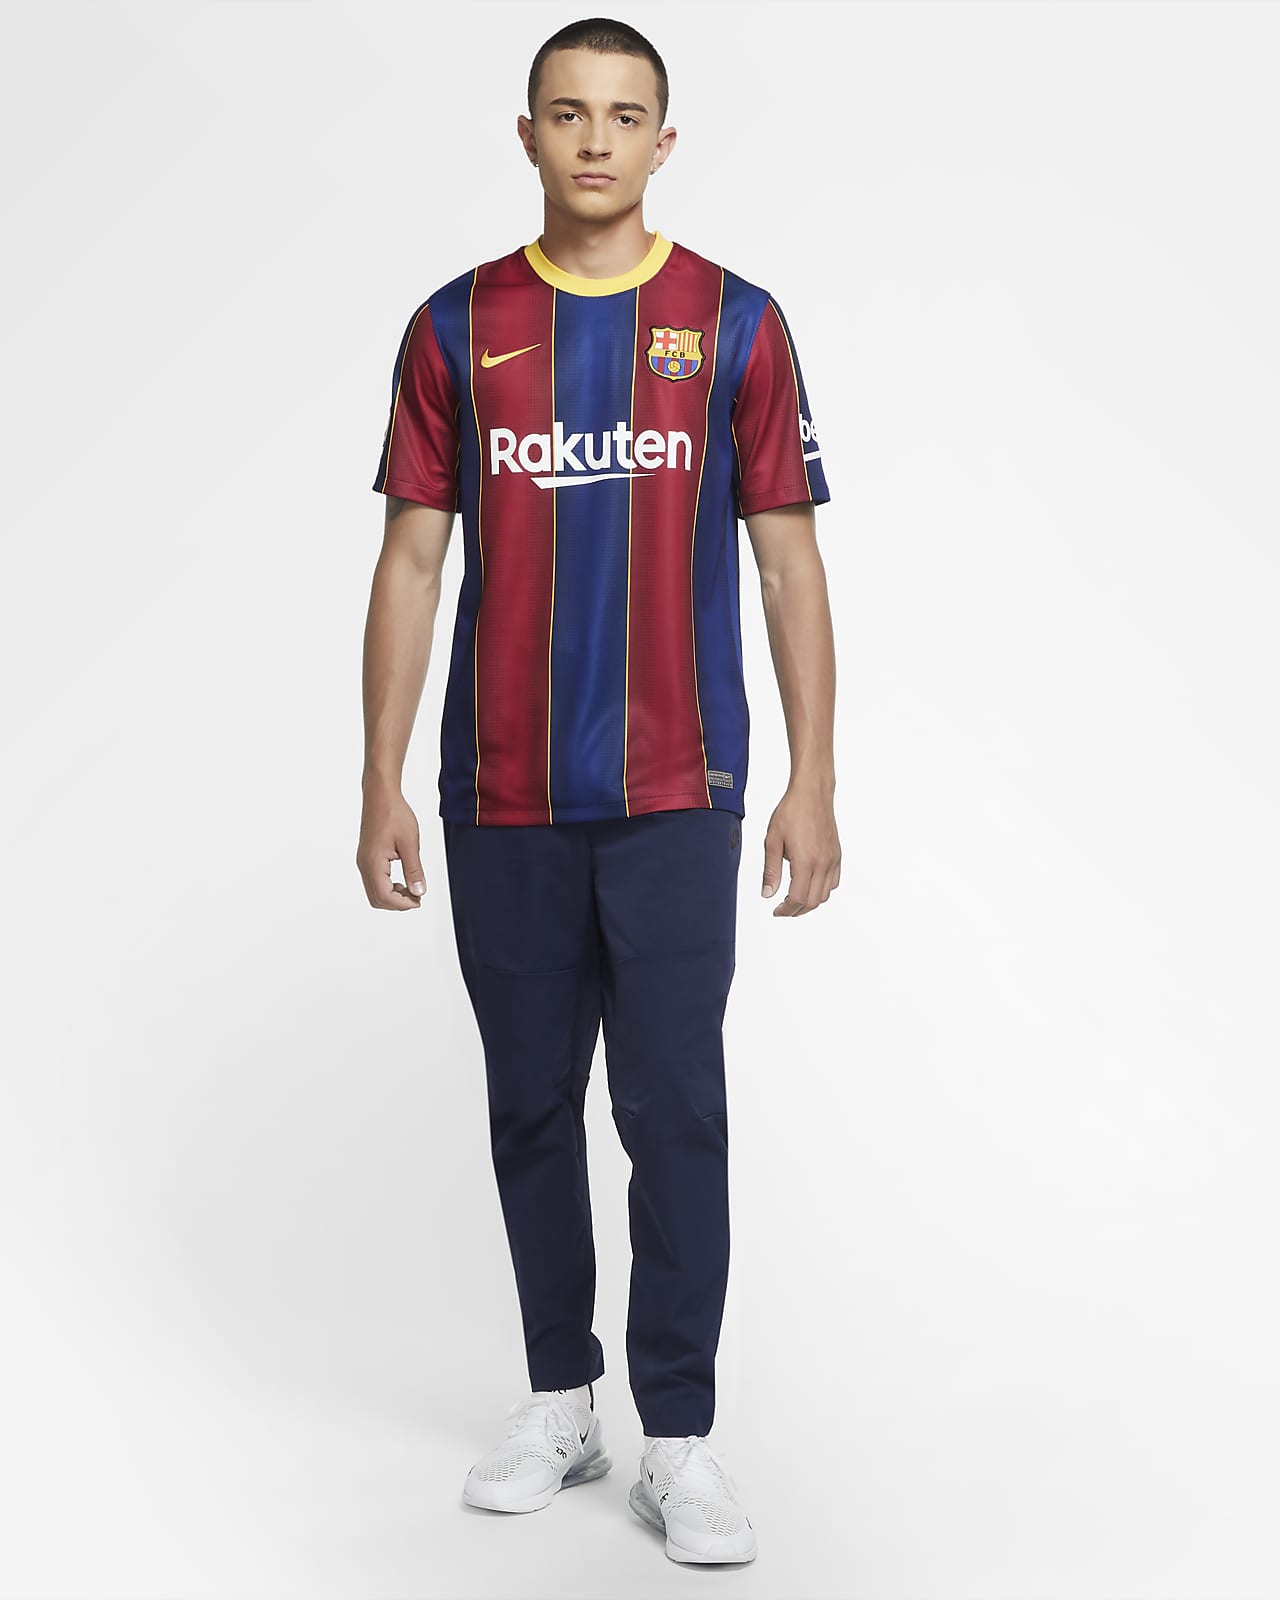 NIKE公式】FC バルセロナ 2020/21 スタジアム ホーム メンズ サッカーユニフォーム.オンラインストア (通販サイト)